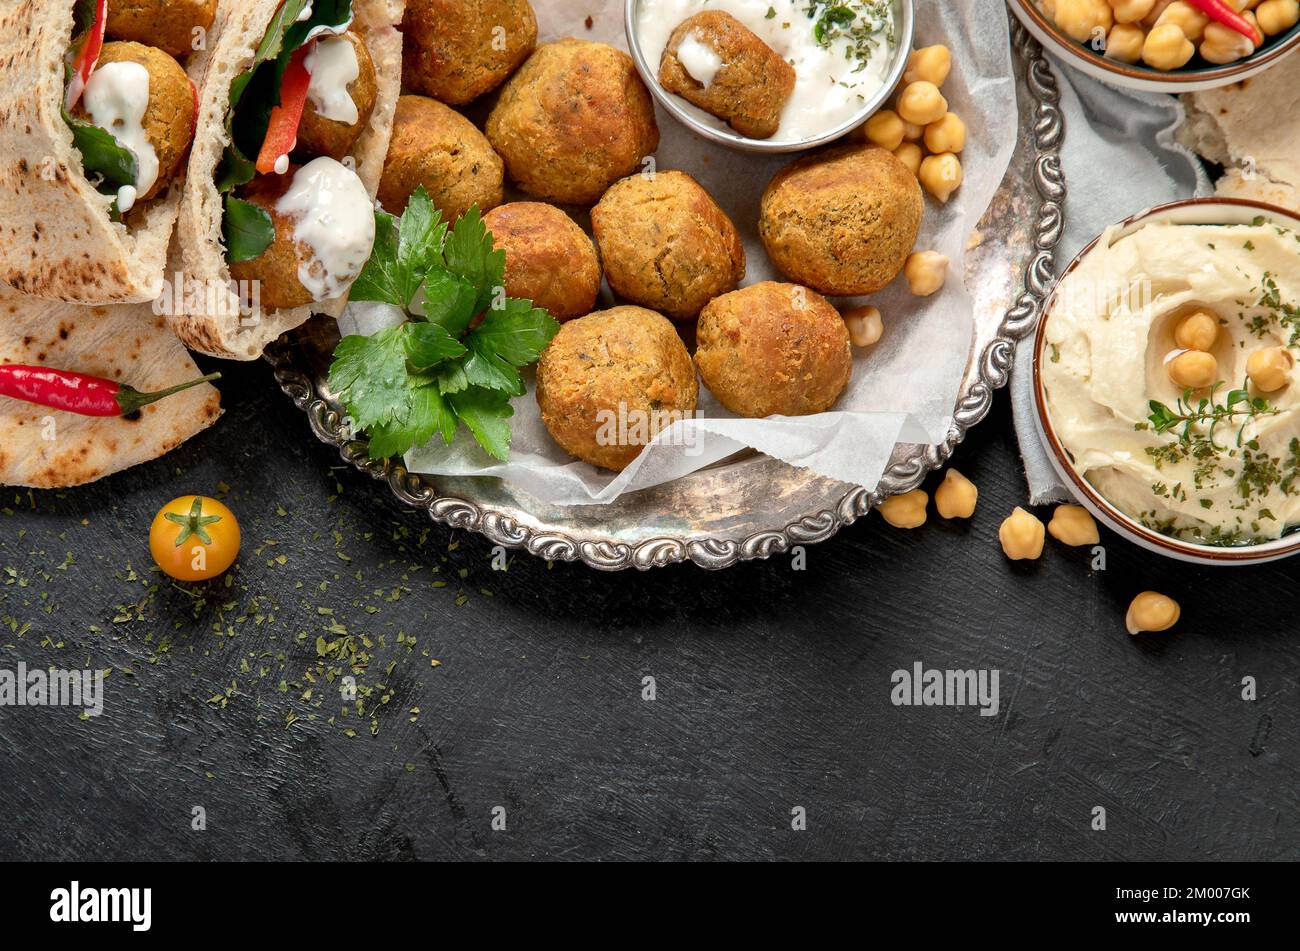 Medio Oriente, piatti arabi con falafel, hummus, pita. Halal cibo. Cucina libanese. Vista dall'alto, spazio di copia Foto Stock